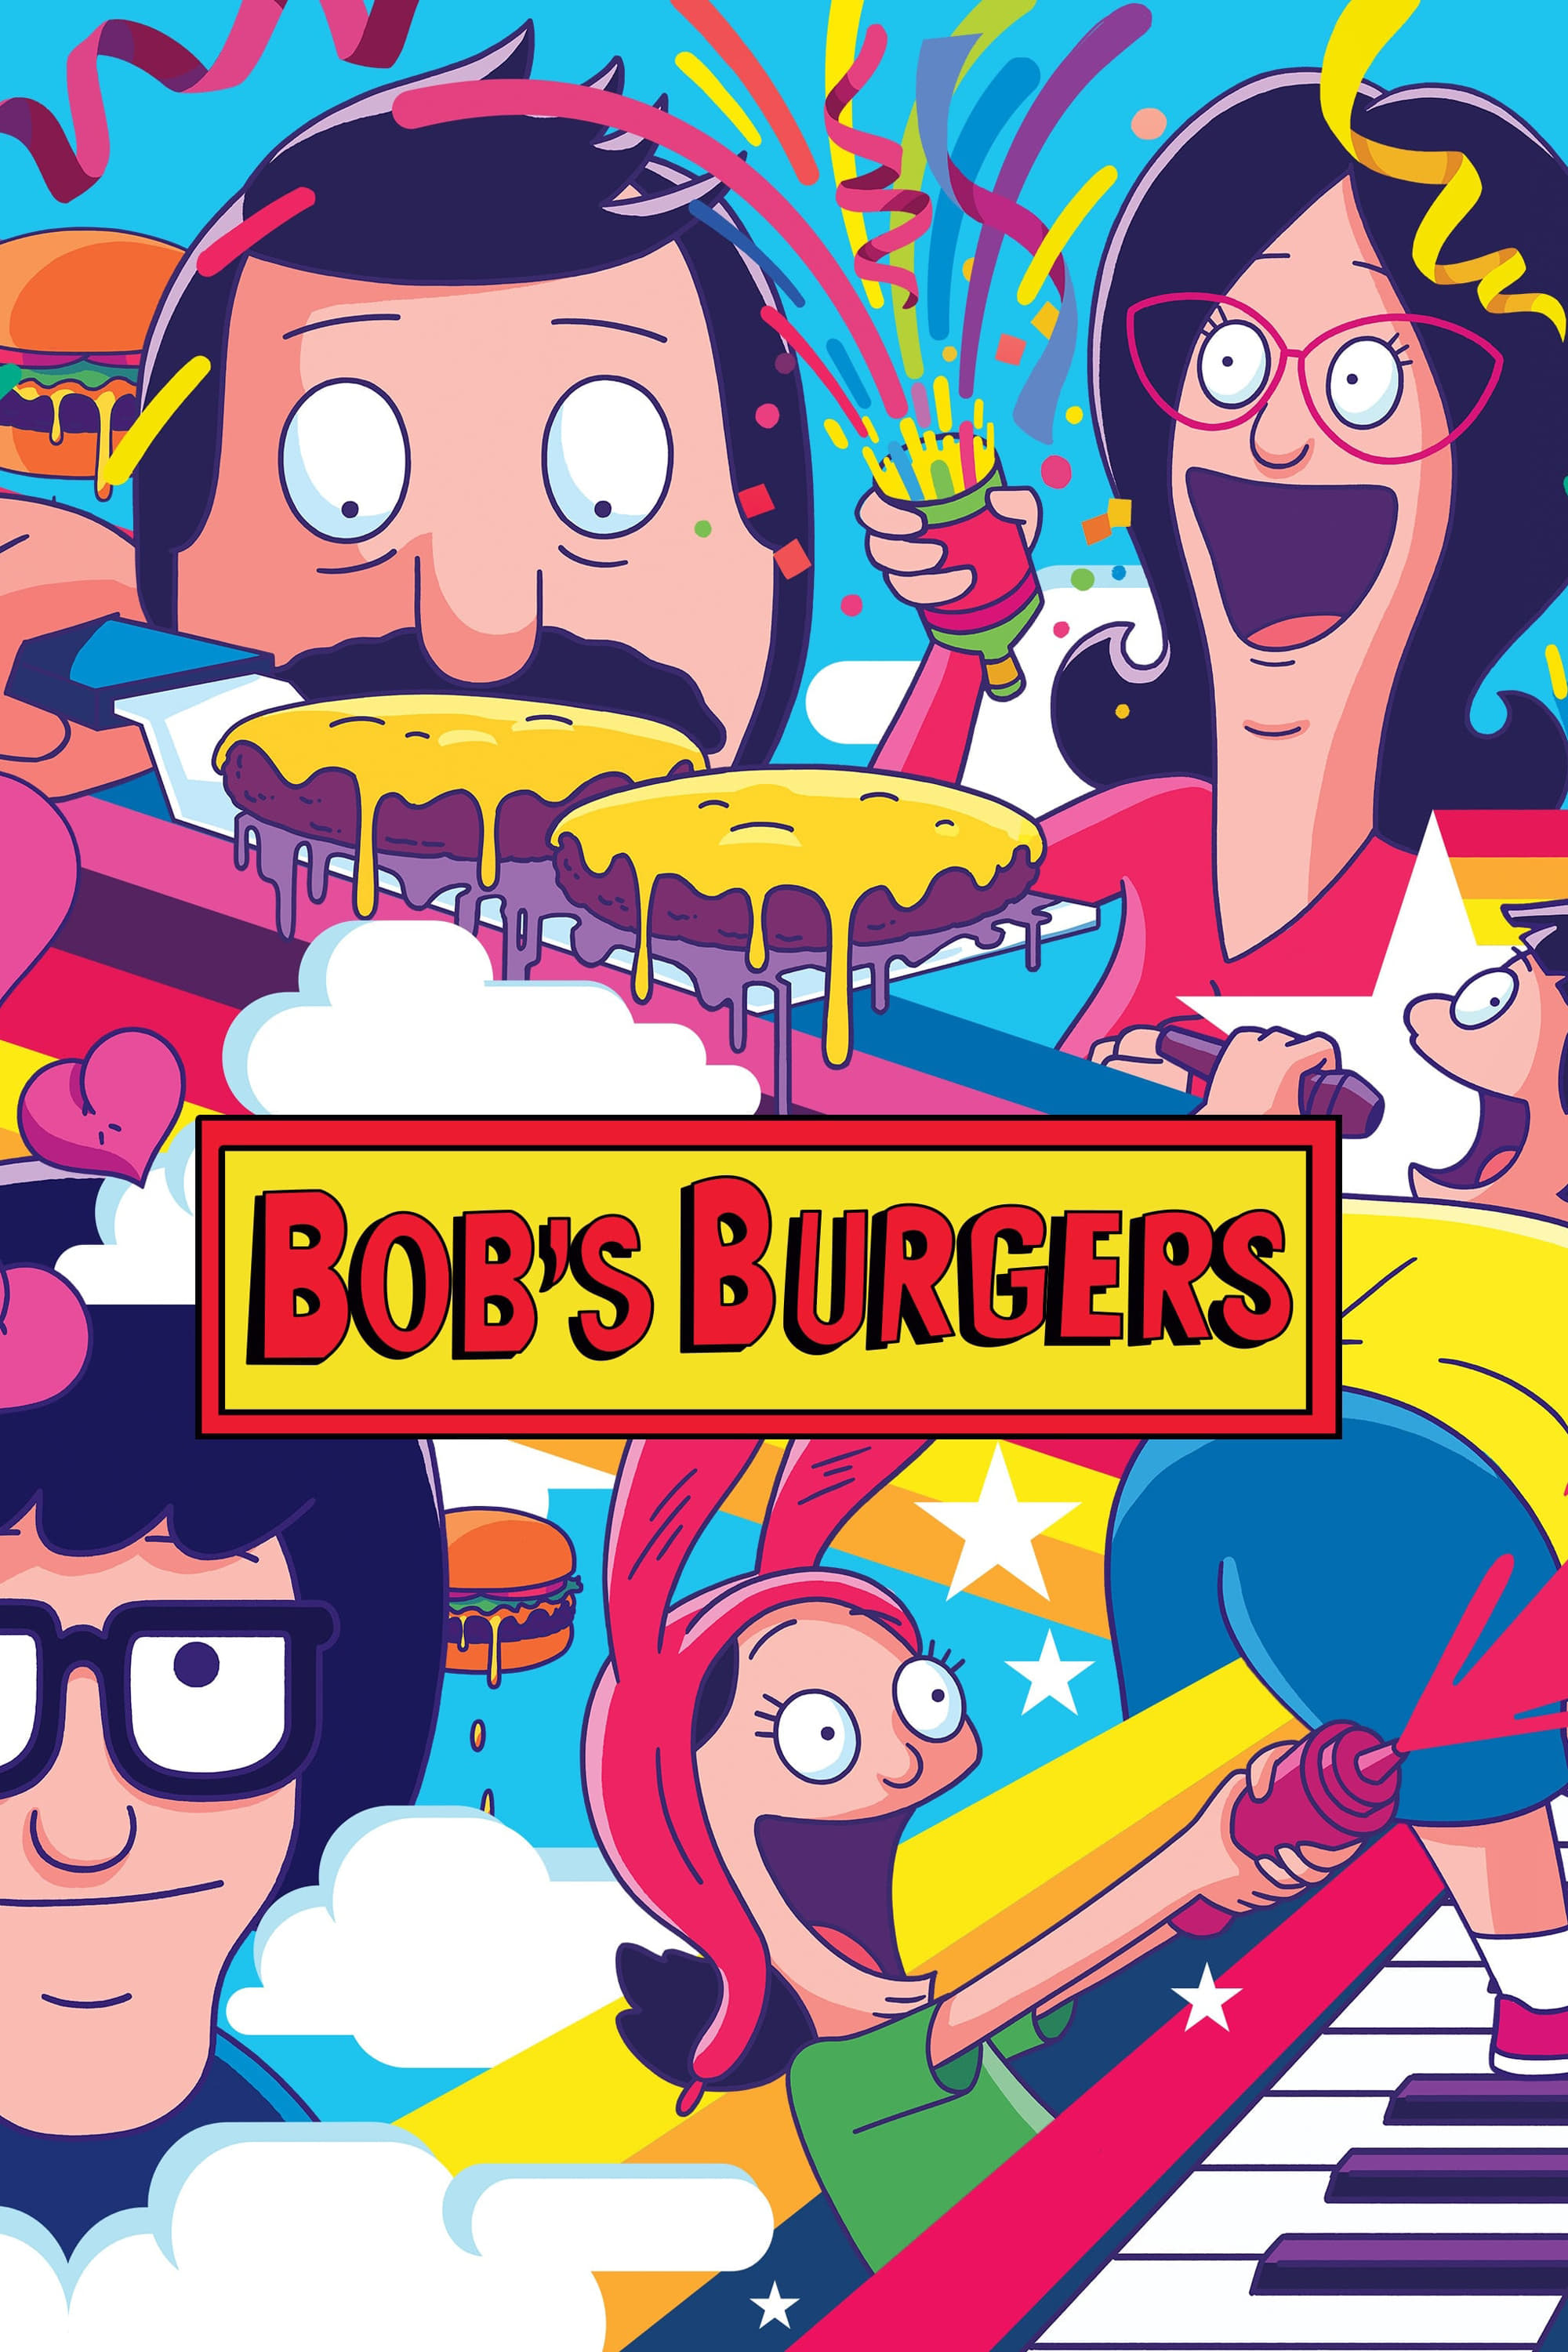 Bob's Burgers (S14E09) Download